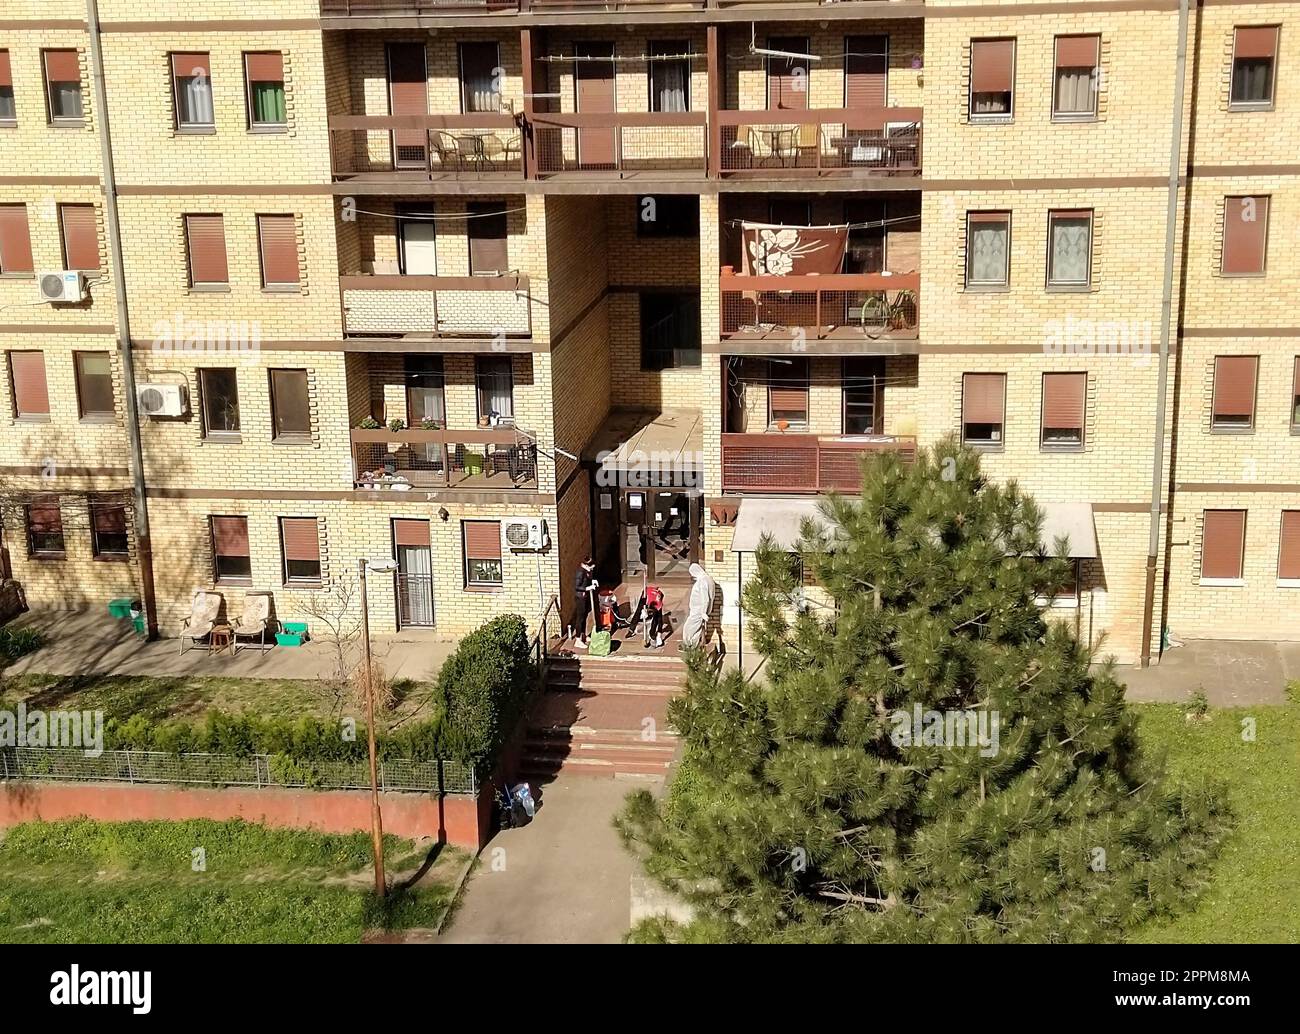 Sremska Mitrovica, Serbien, 08. April 2020 - Desinfektion des Eingangs eines Wohnungsgebäudes durch zwei Frauen - Putzfrauen und eine Epidemiologin in einem weißen biochemischen Schutzanzug. Stockfoto